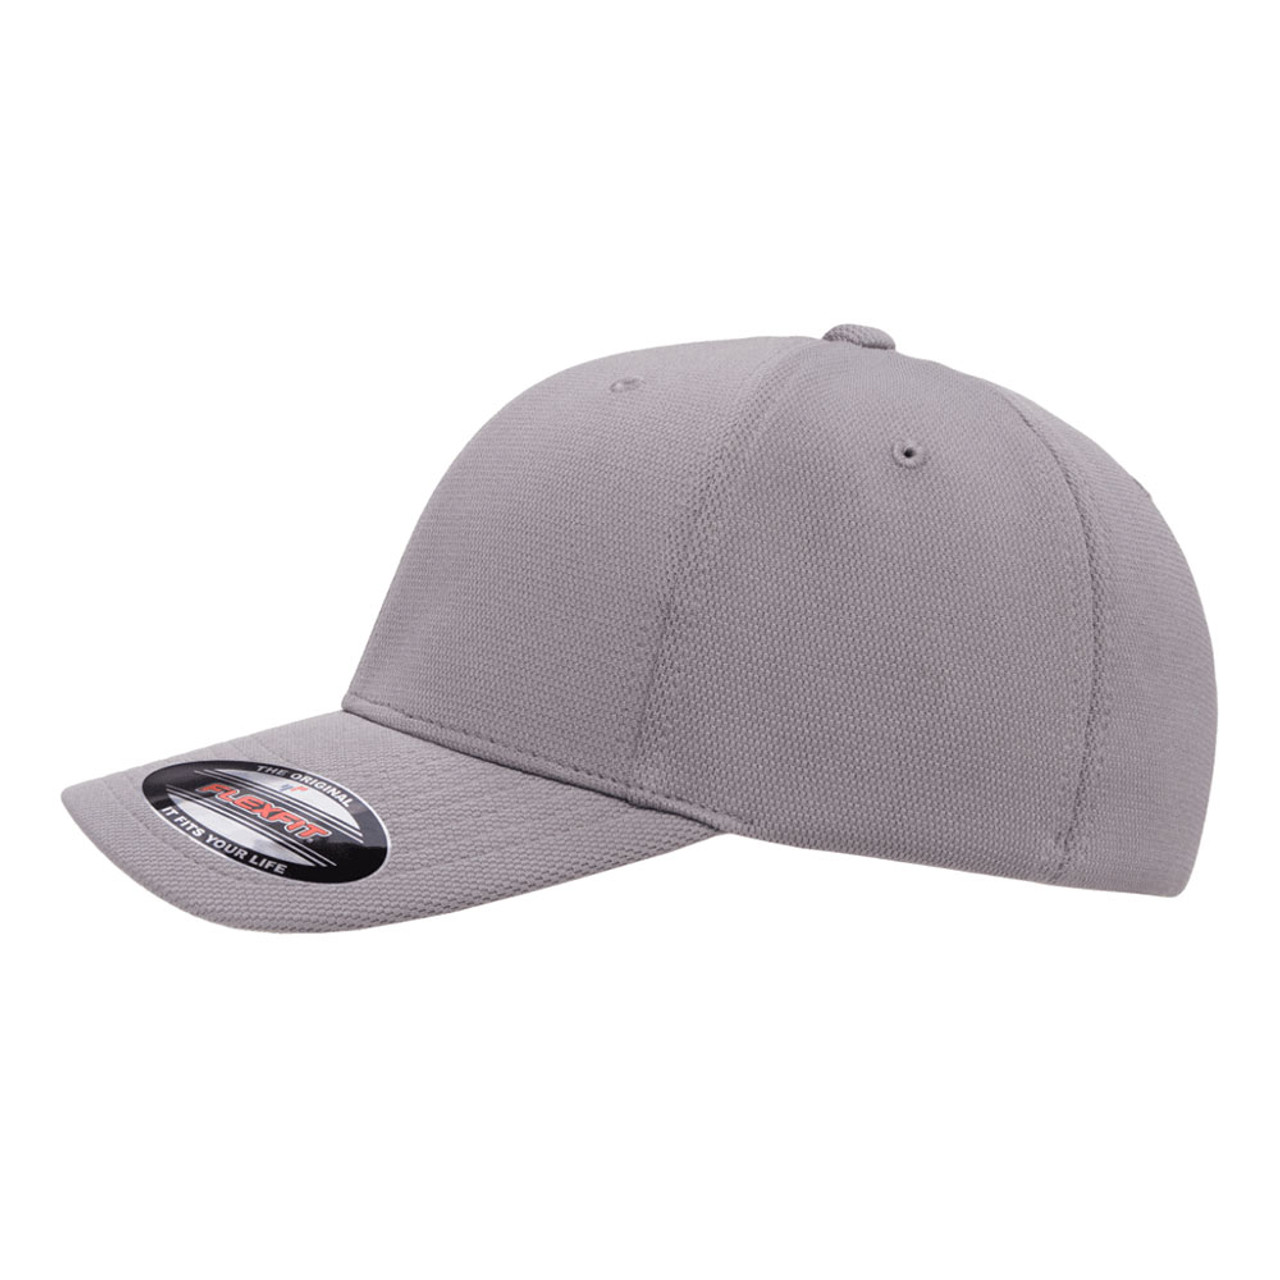 Cap | One - Hat The Jac Dozen Cool & Dry Flexfit Performance